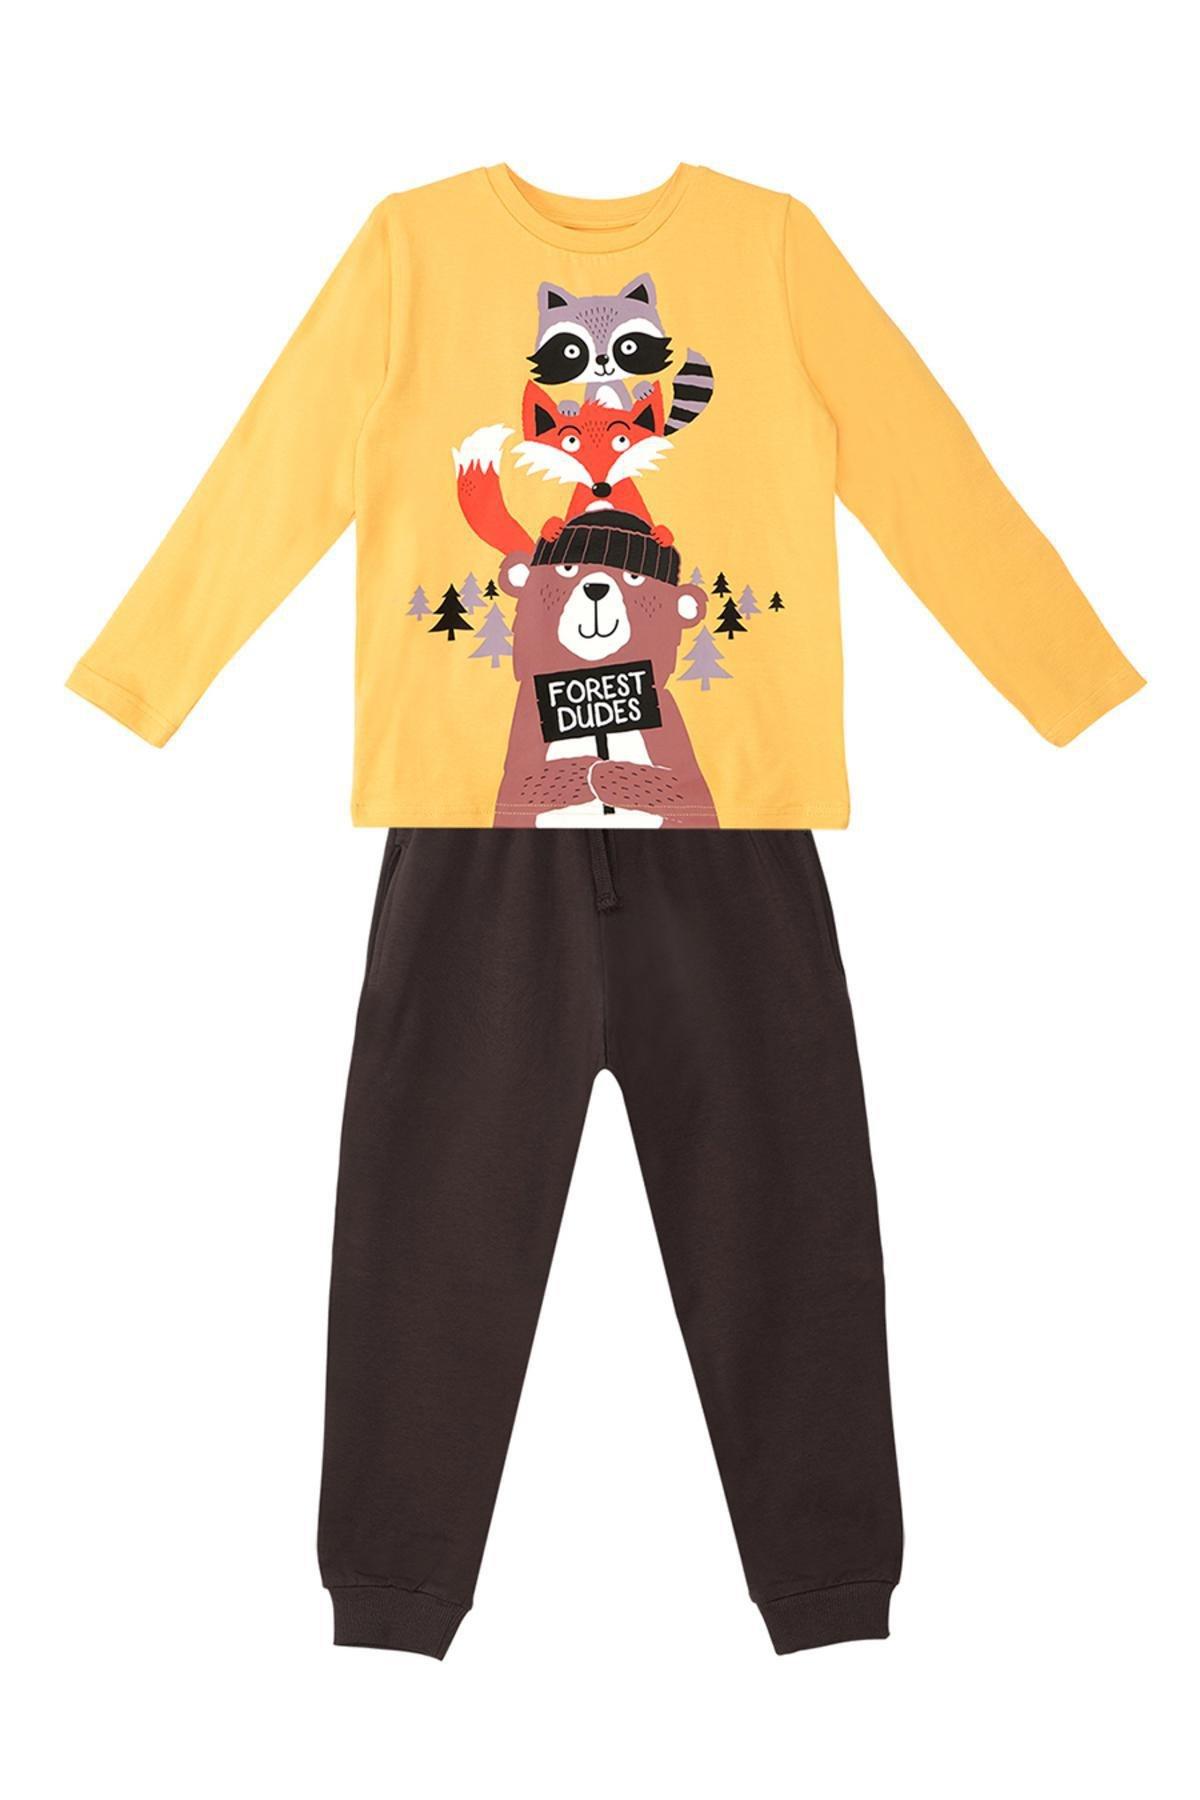 Denokids - Multicolour Printed Pyjamas Set, Kids Boys